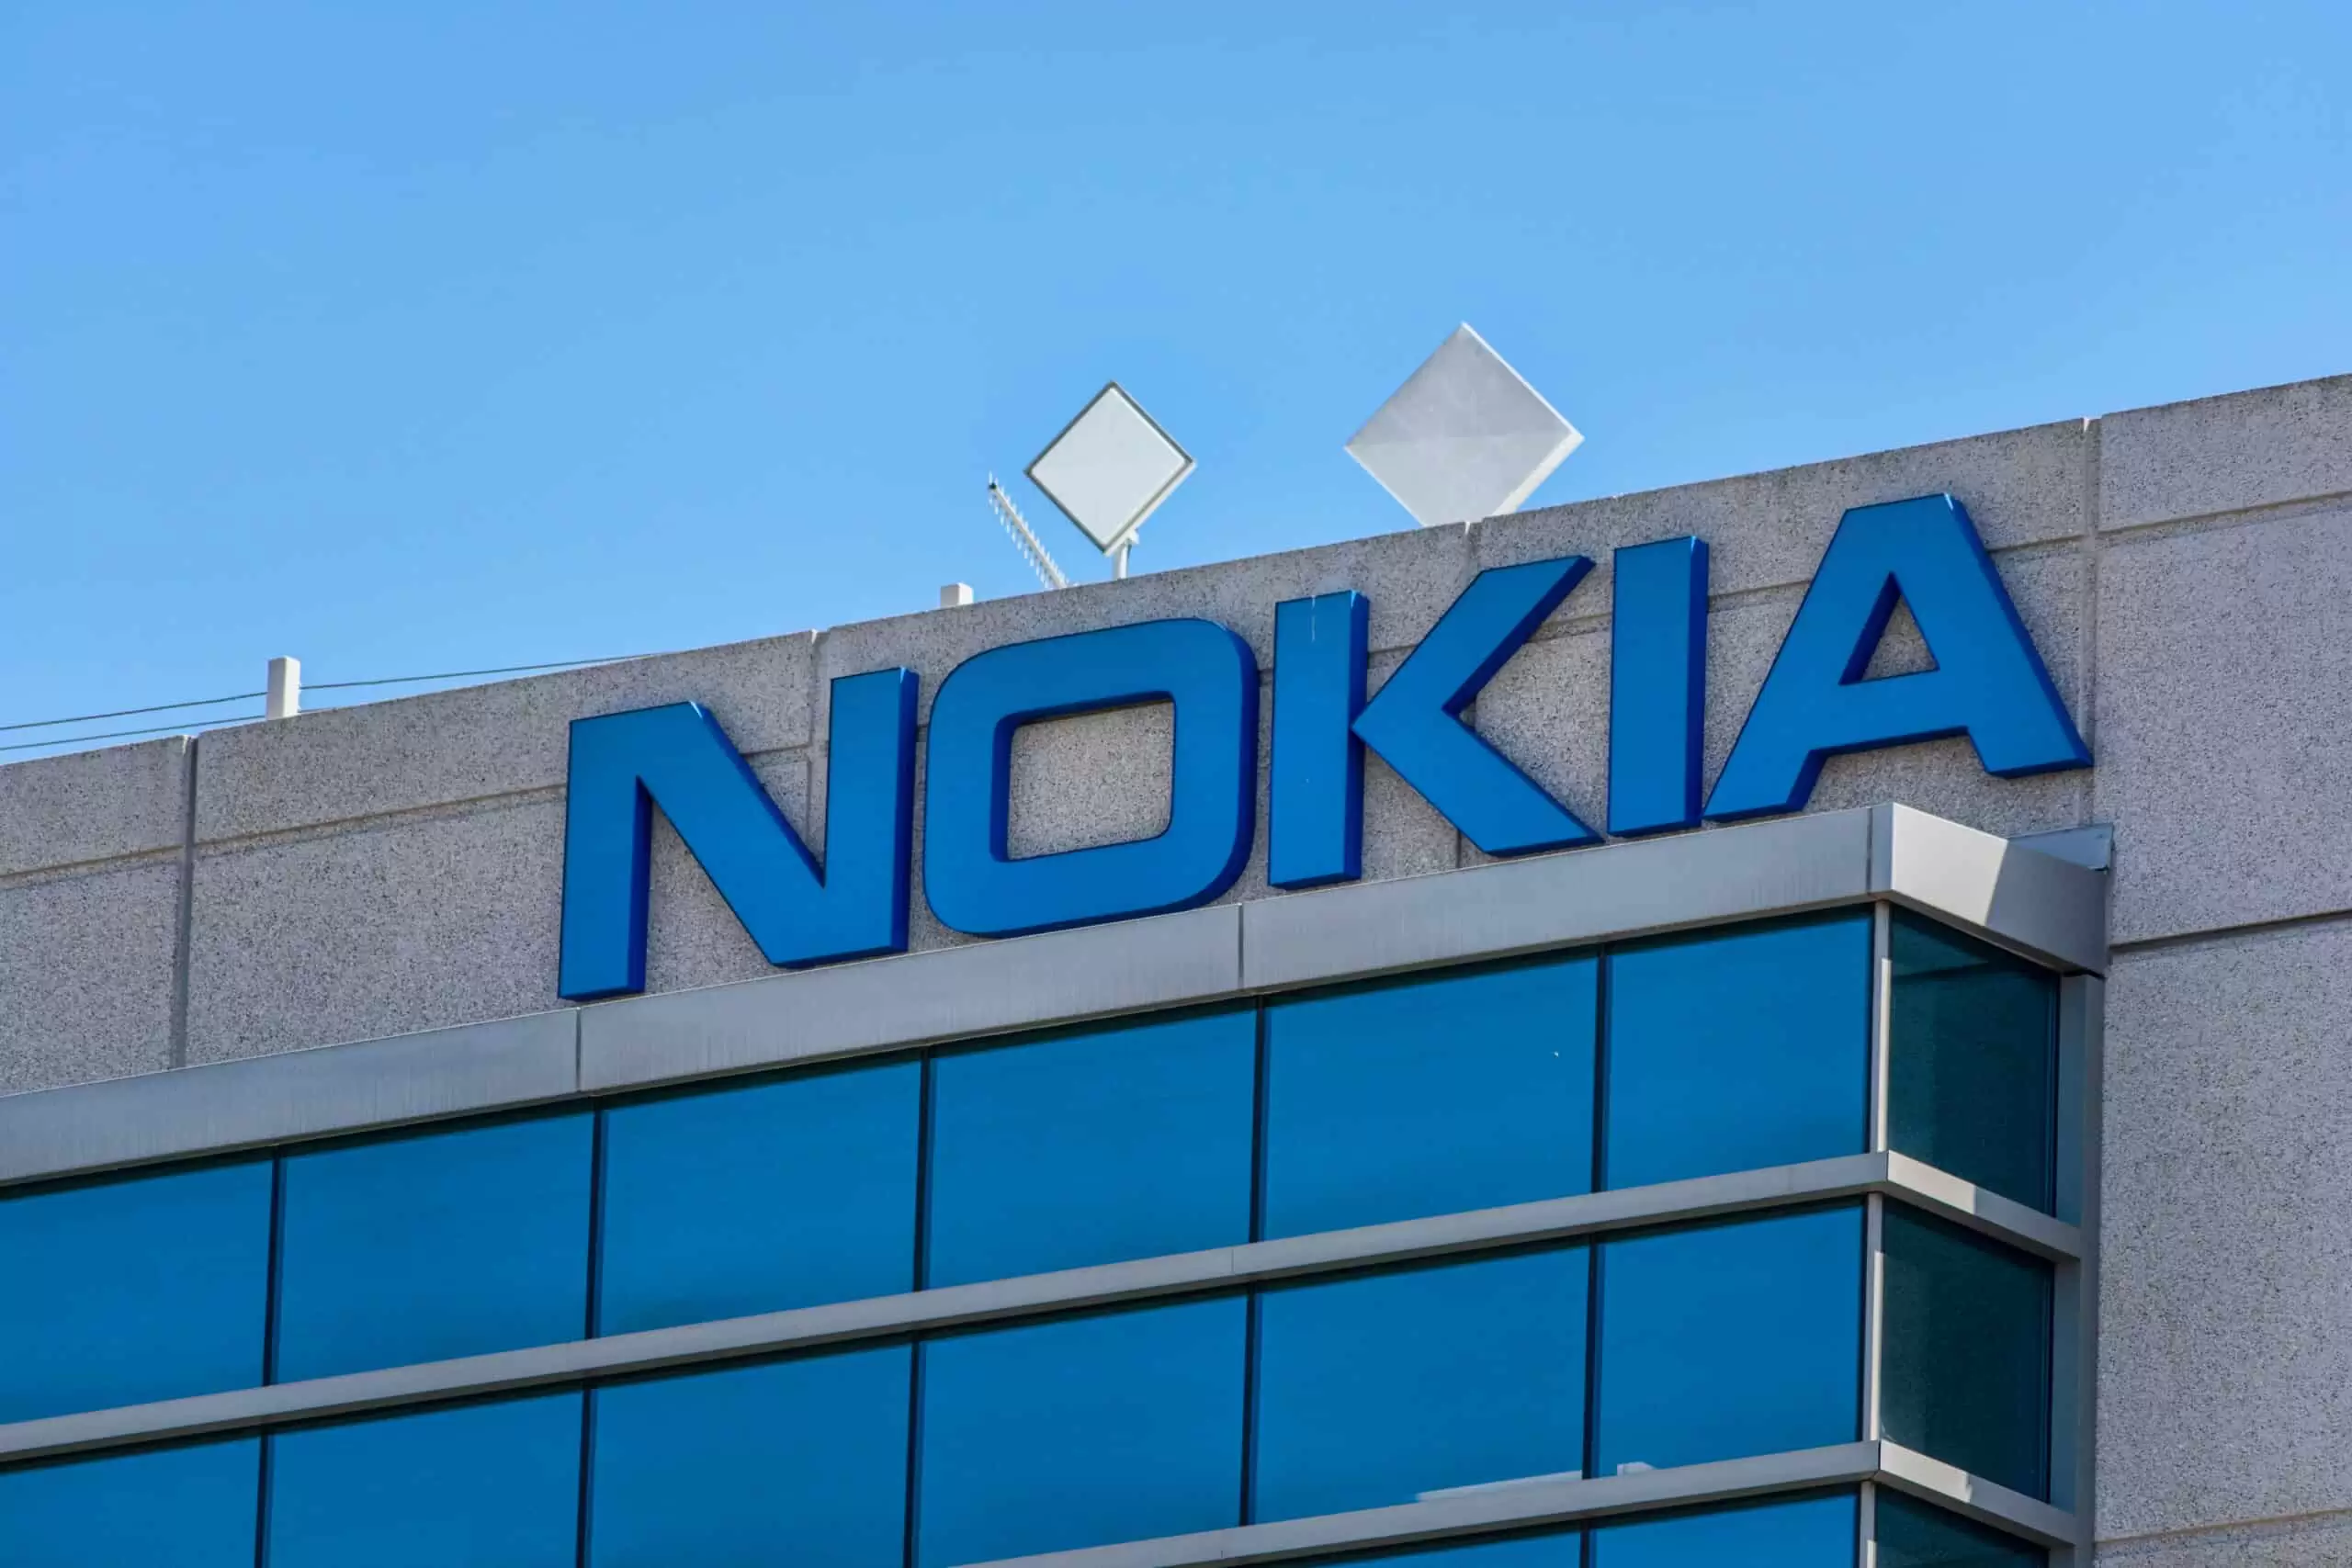 Nokia, Erensoy Bilgin’i yeni Türkiye Ülke Müdürü Olarak Atadı